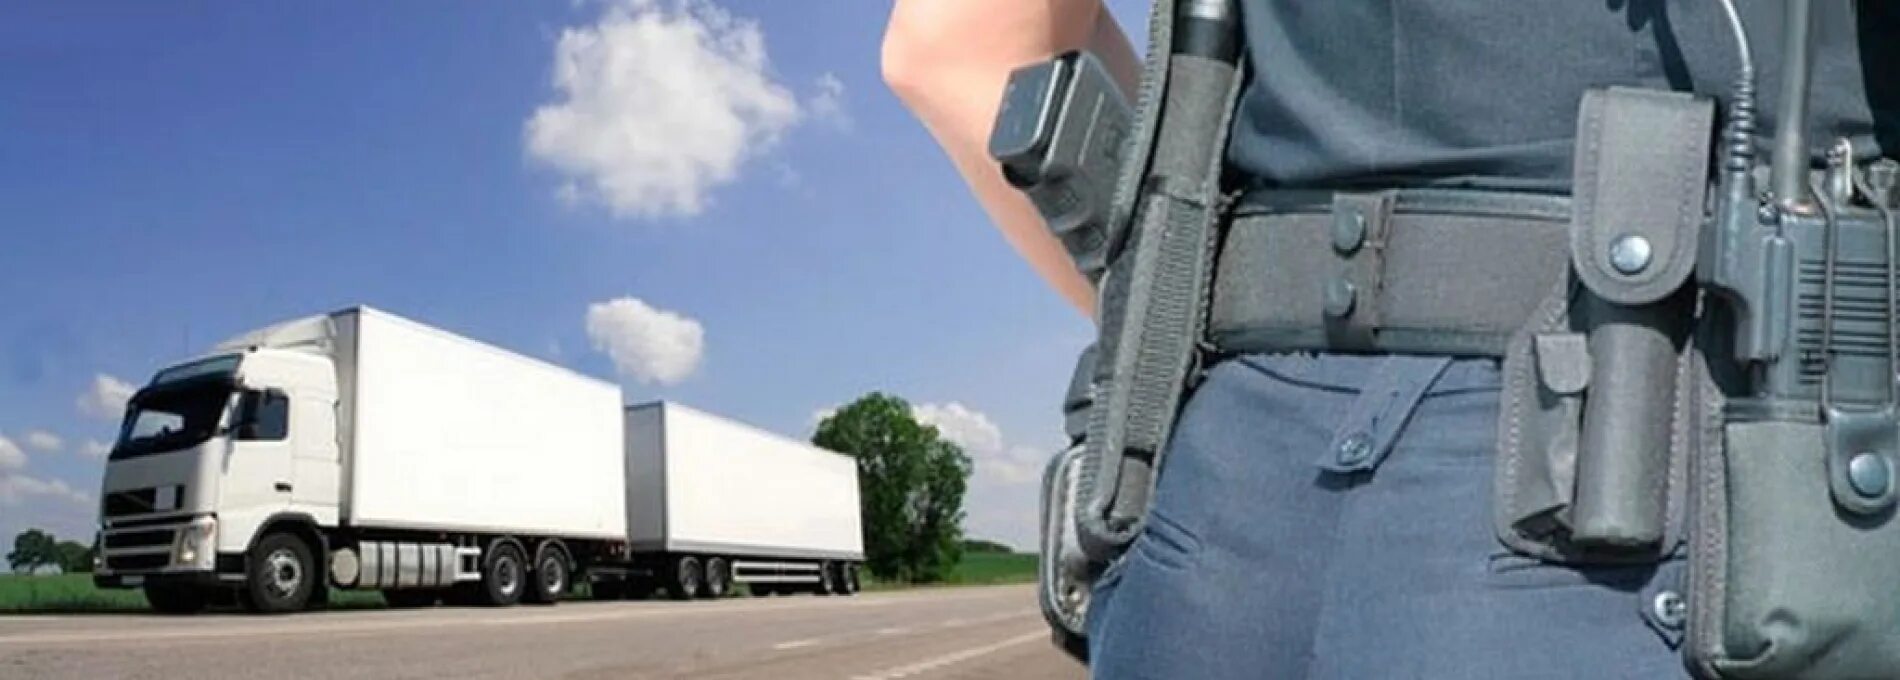 Сопровождение грузов. Охрана грузов. Сопровождение грузов охрана. Охрана перевозимых грузов.